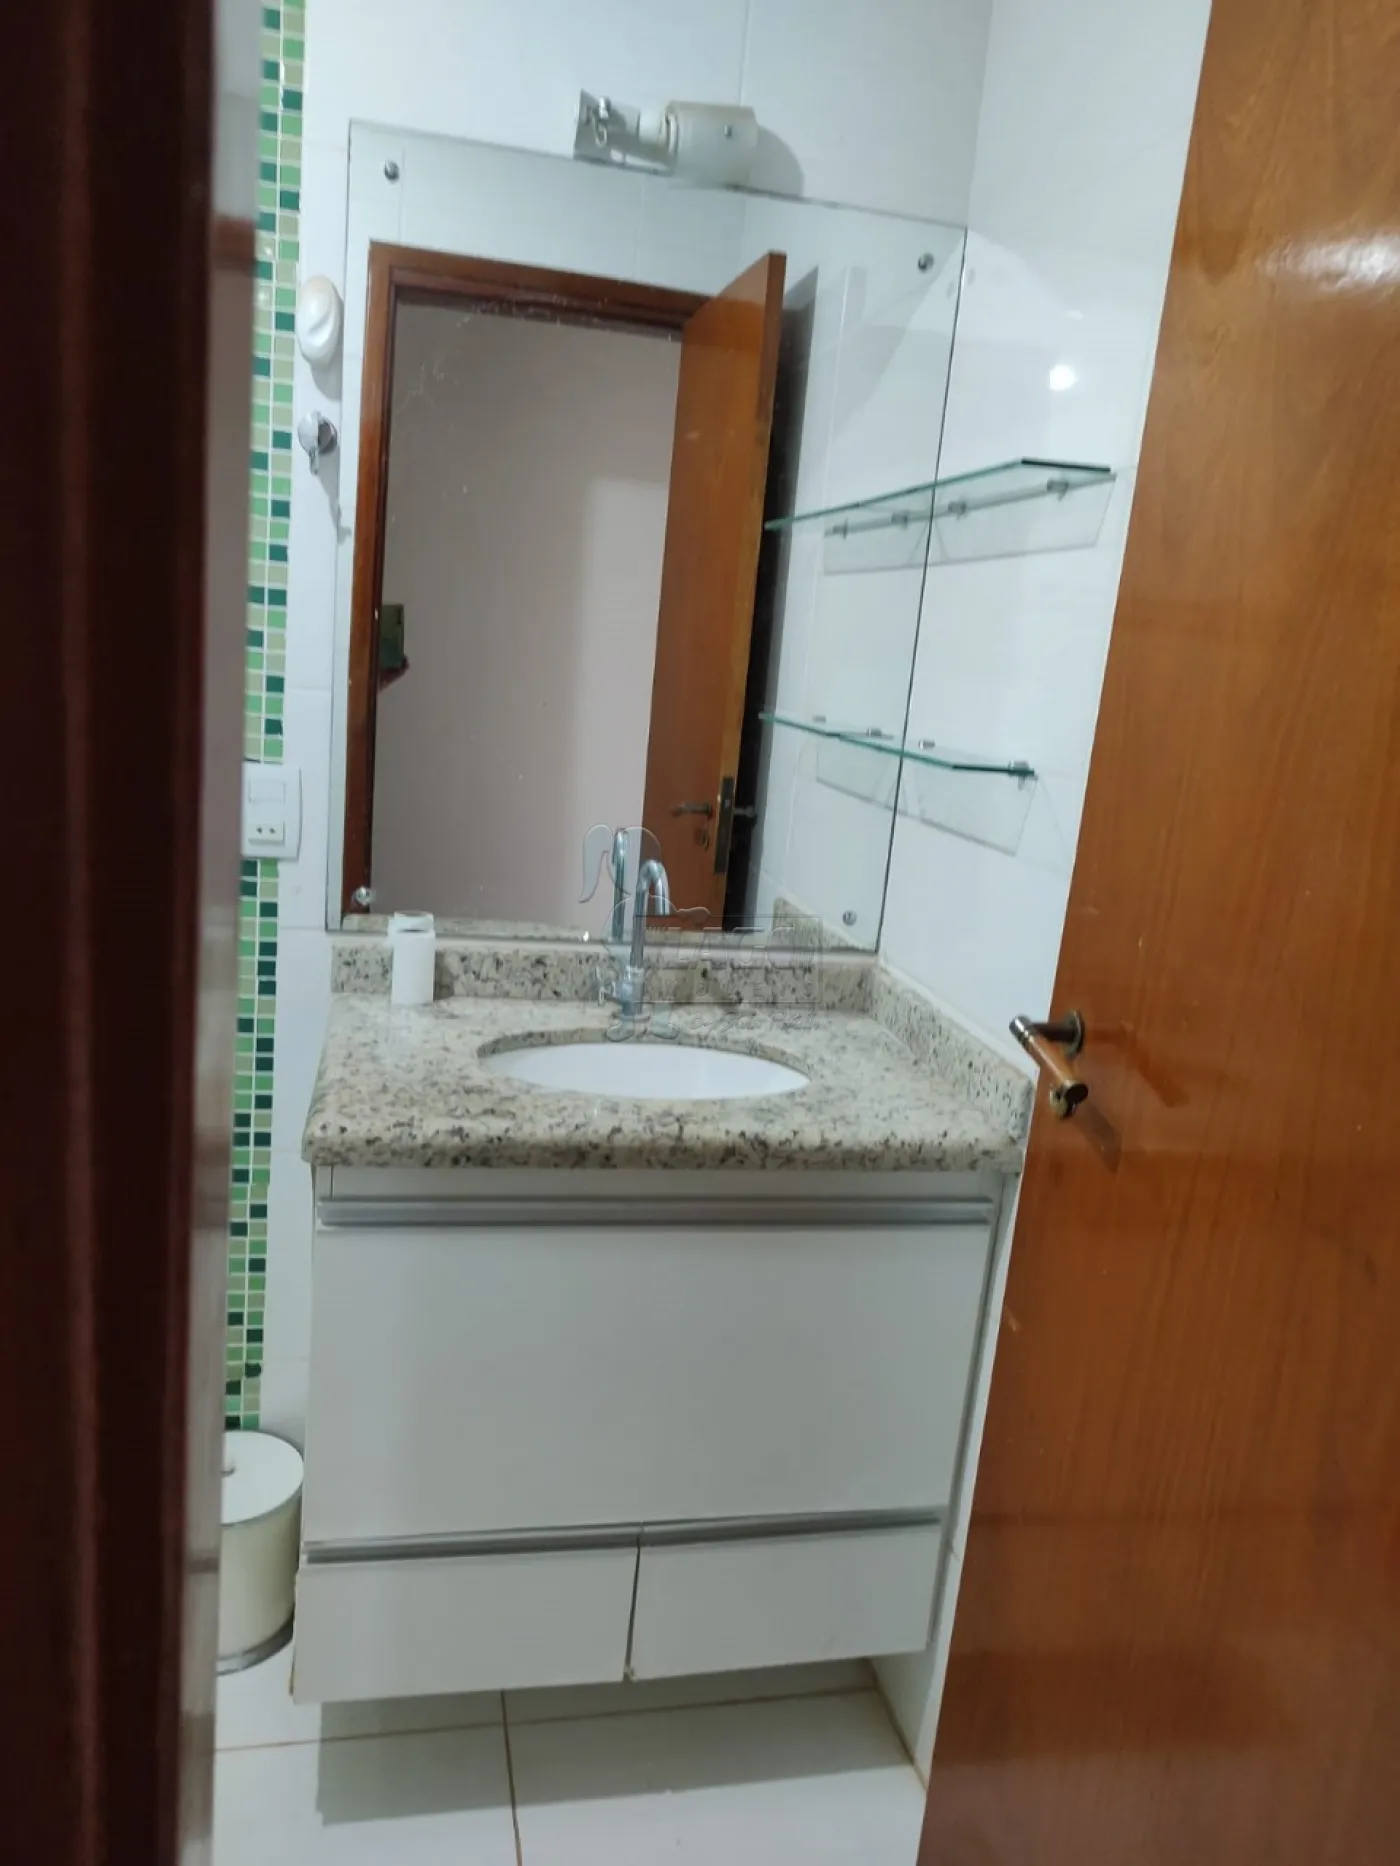 Comprar Apartamentos / Padrão em Ribeirão Preto R$ 175.000,00 - Foto 17